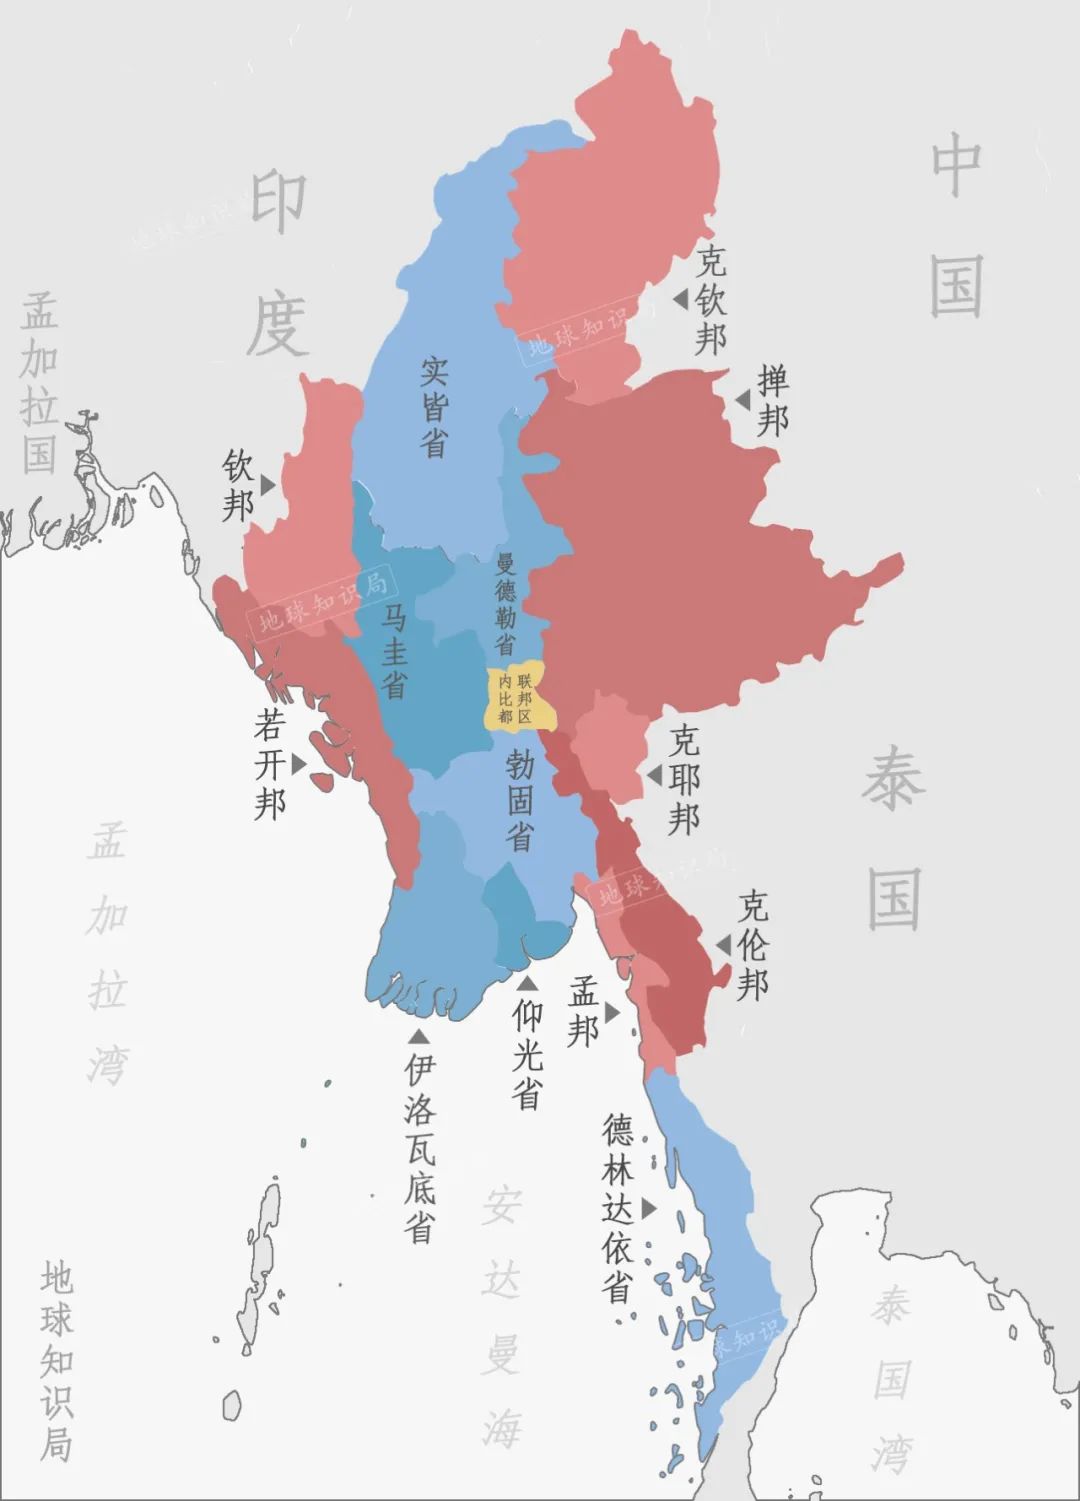 克钦邦地图中文版图片